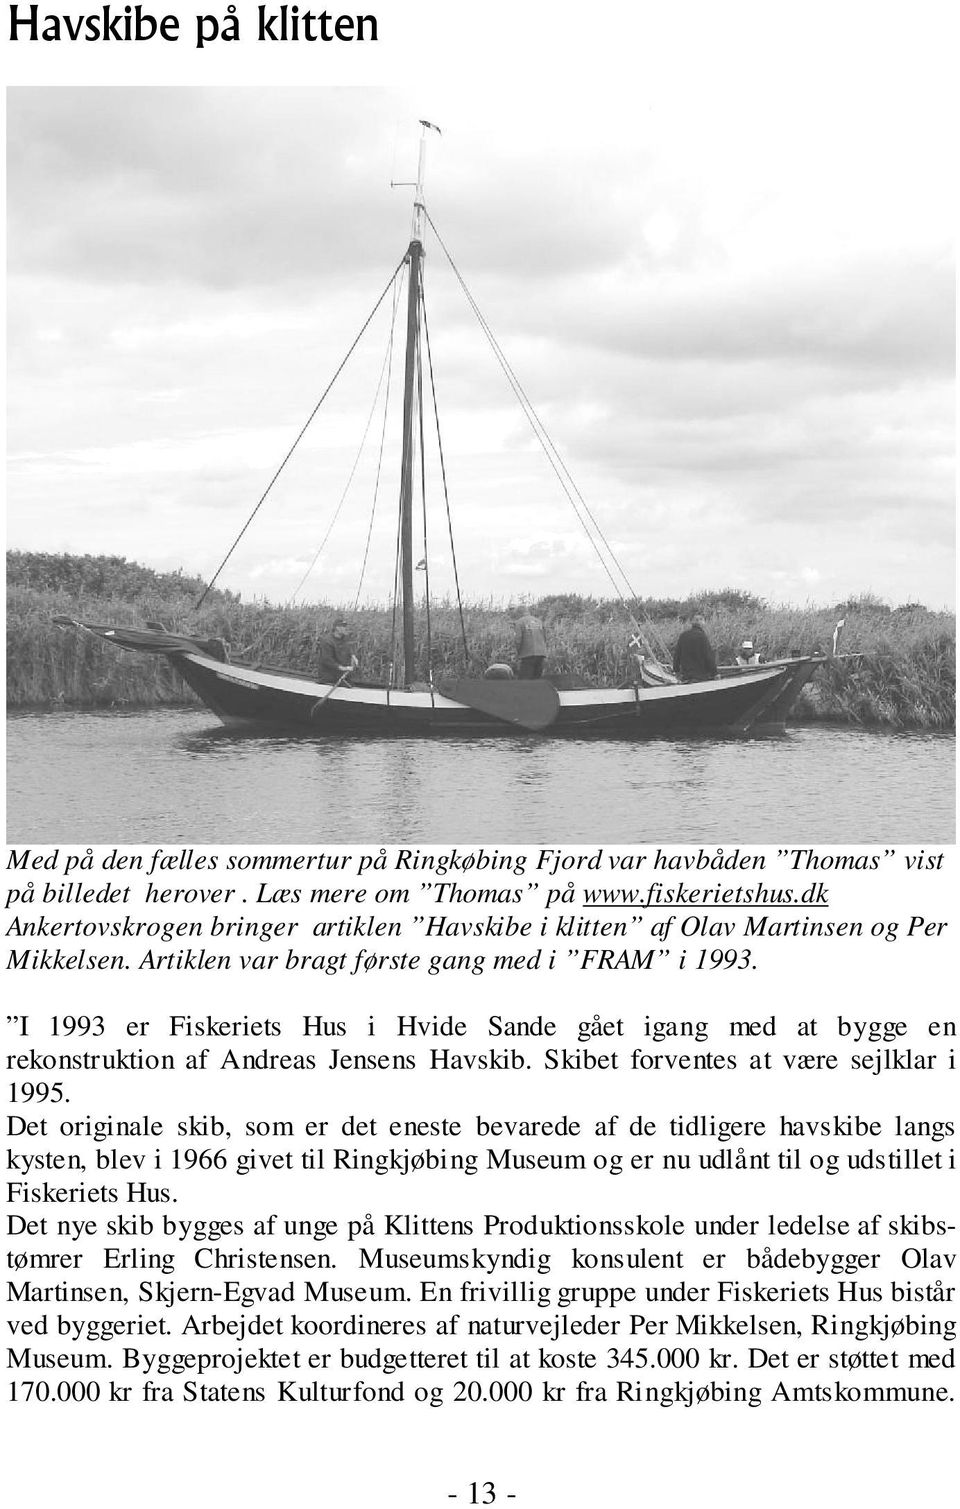 I 1993 er Fiskeriets Hus i Hvide Sande gået igang med at bygge en rekonstruktion af Andreas Jensens Havskib. Skibet forventes at være sejlklar i 1995.